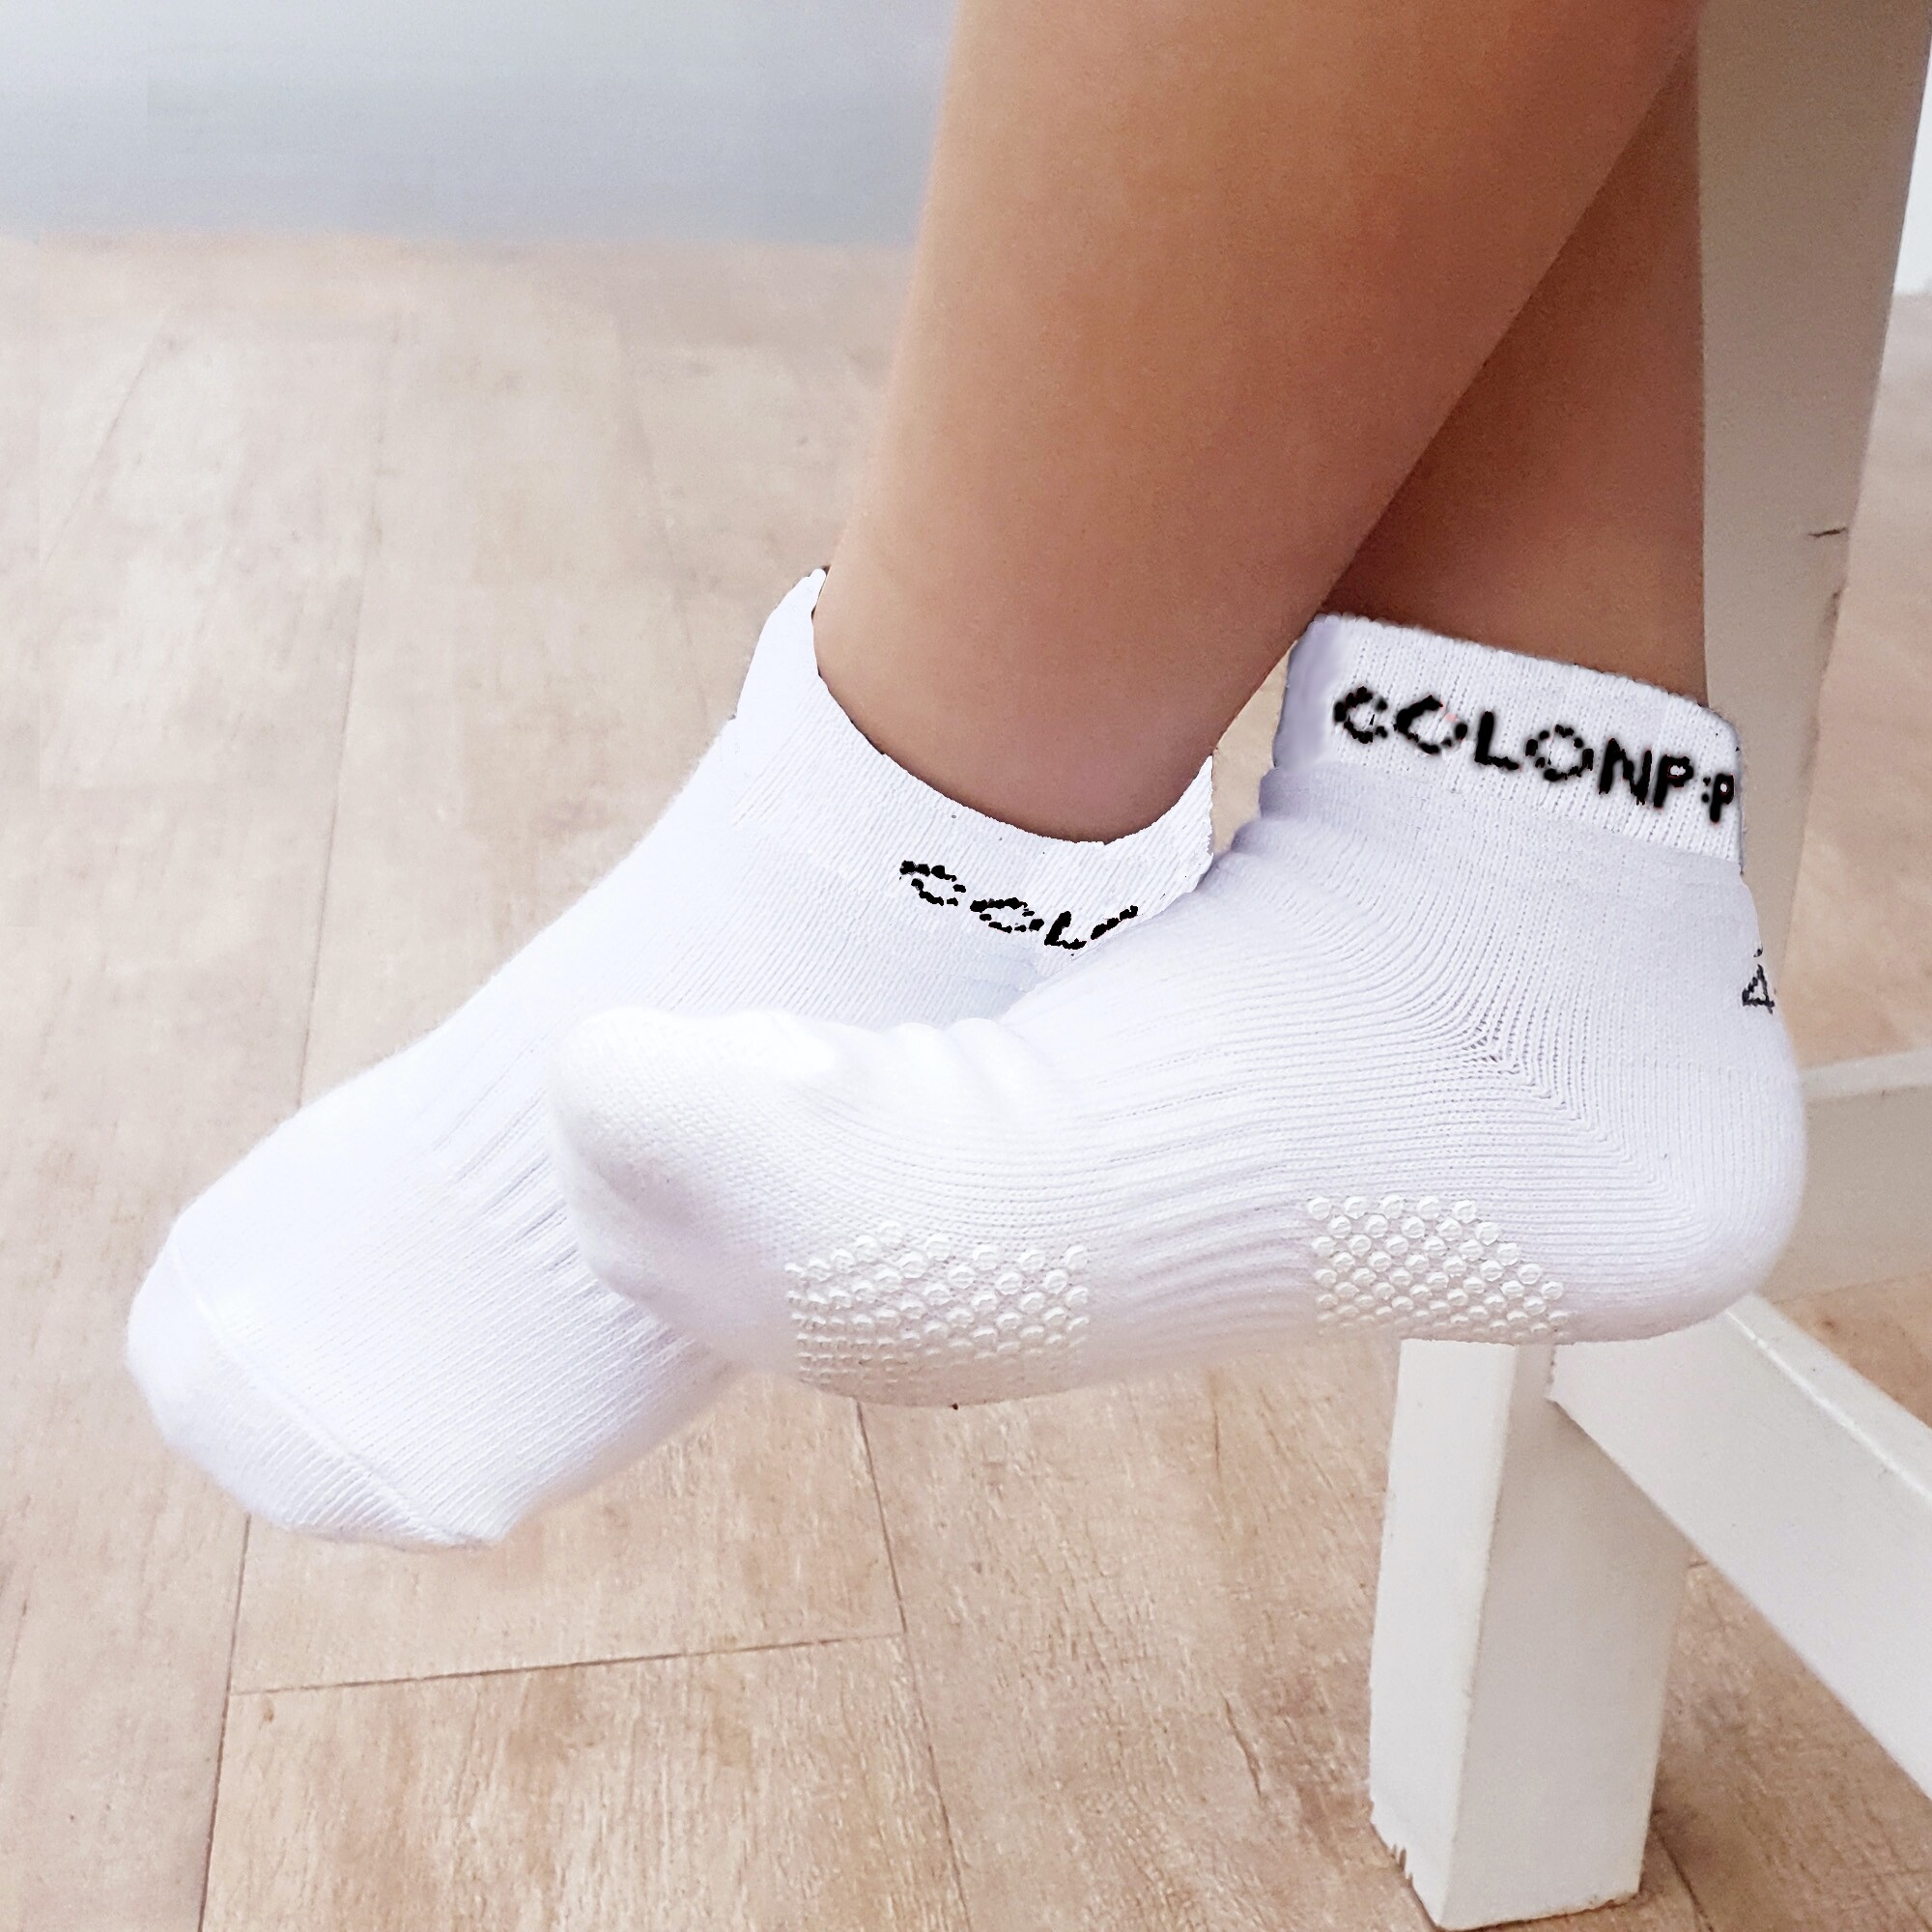 ถุงเท้าเด็ก สีพื้น Cotton 100% มีกันลื่นลายน่ารัก 2-9 ขวบ (มี 6 สีให้เลือก)